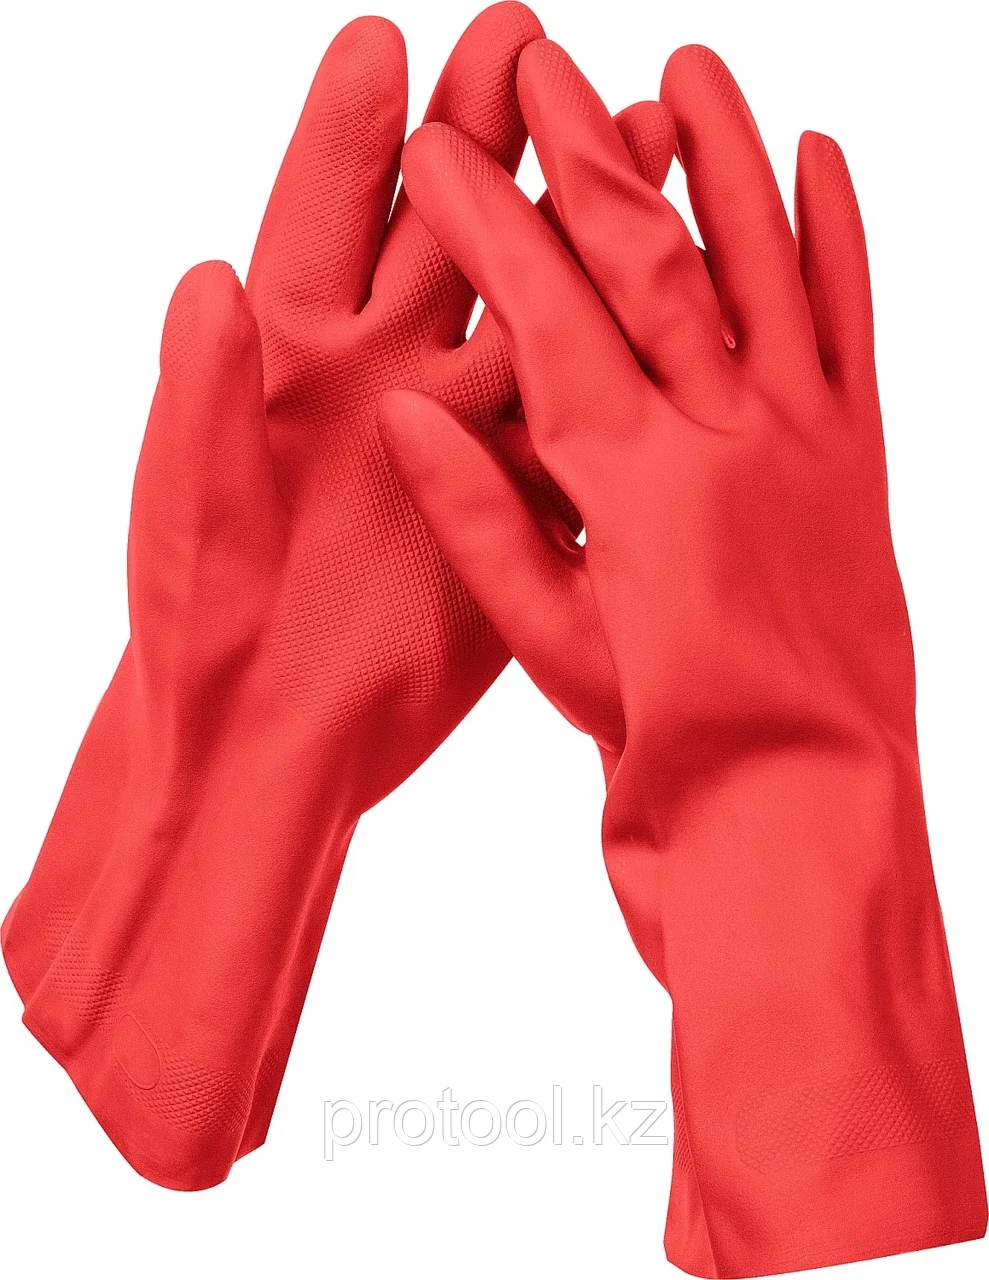 ЗУБР XL, перчатки латексные хозяйственно-бытовые, повышенной прочности с х/б напылением, рифлёные ЛАТЕКС+